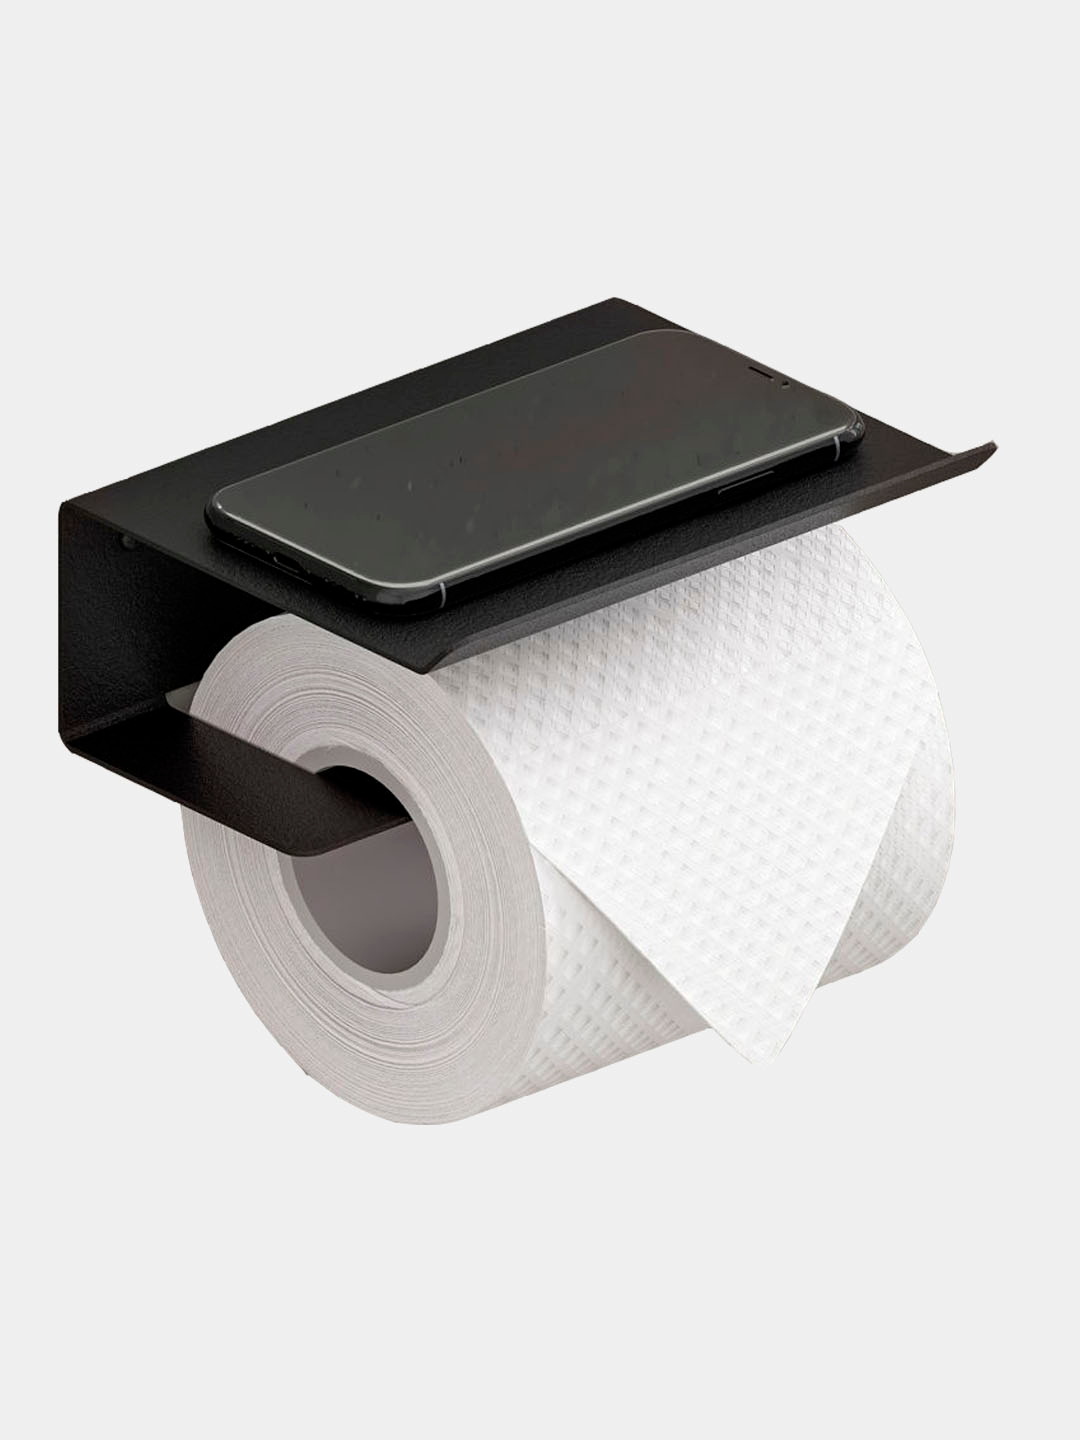 Вещи, которые можно сделать из рулона от туалетной бумаги